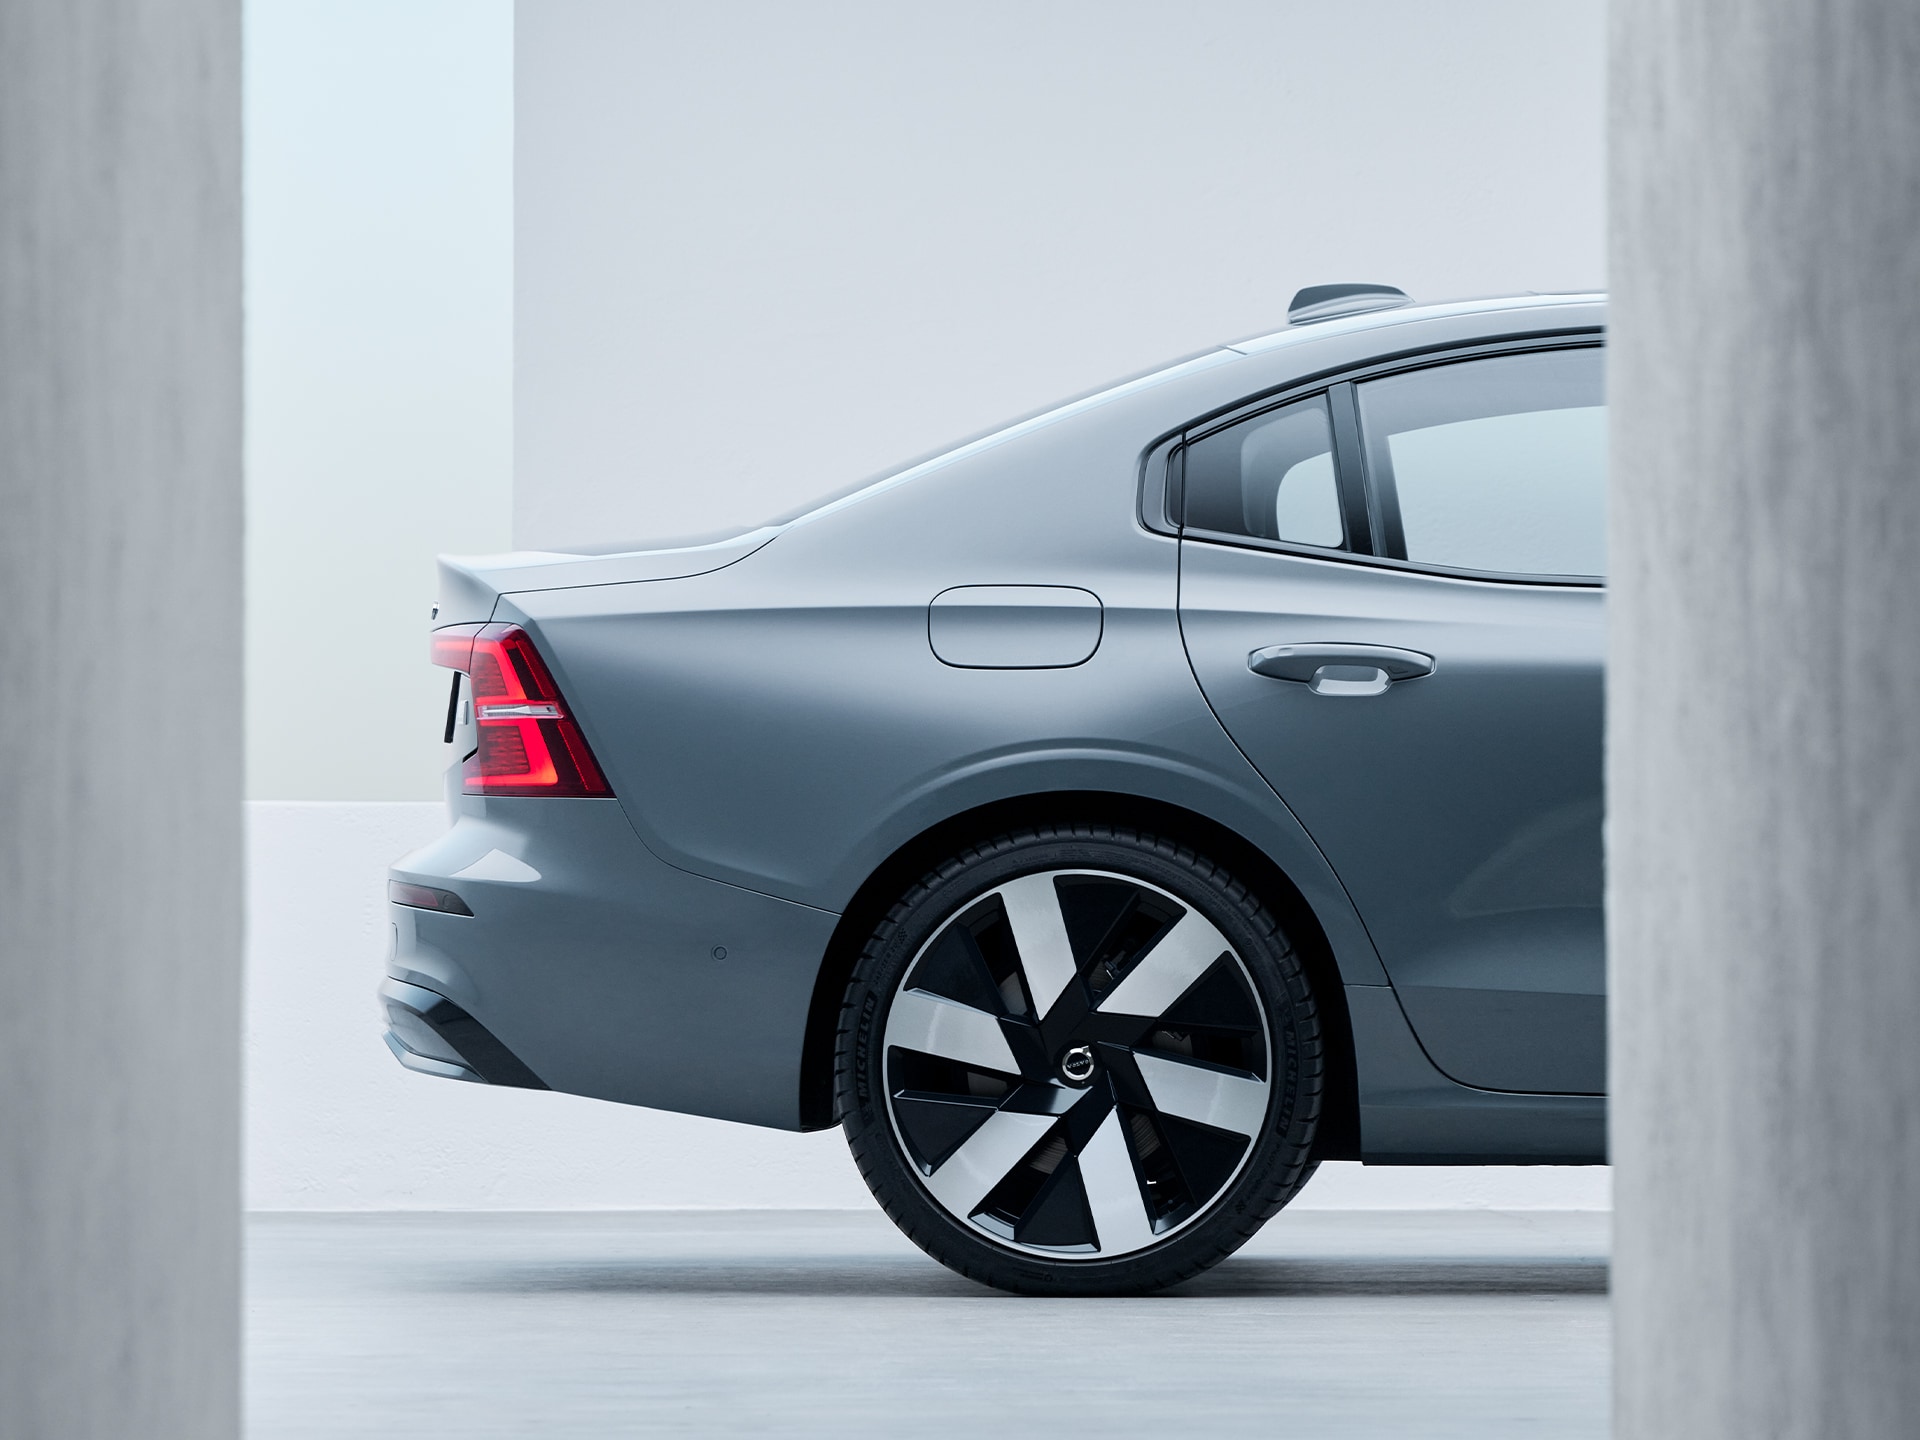 Nuevo diseño aerodinámico de las ruedas del Volvo S60 Recharge.